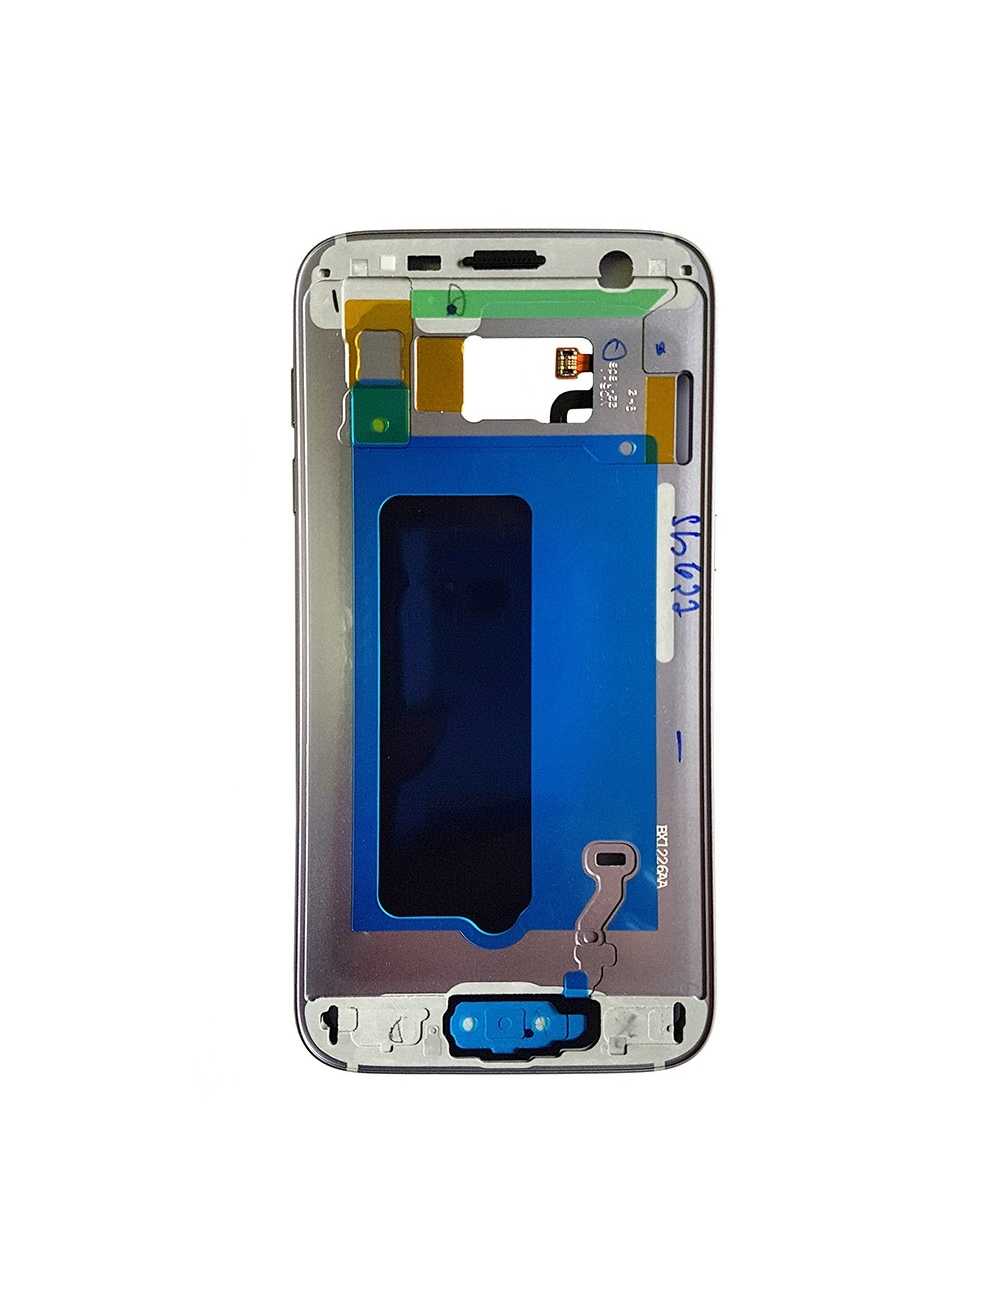 Carcasa intermedia Samsung Galaxy S7 negro (original con uso)